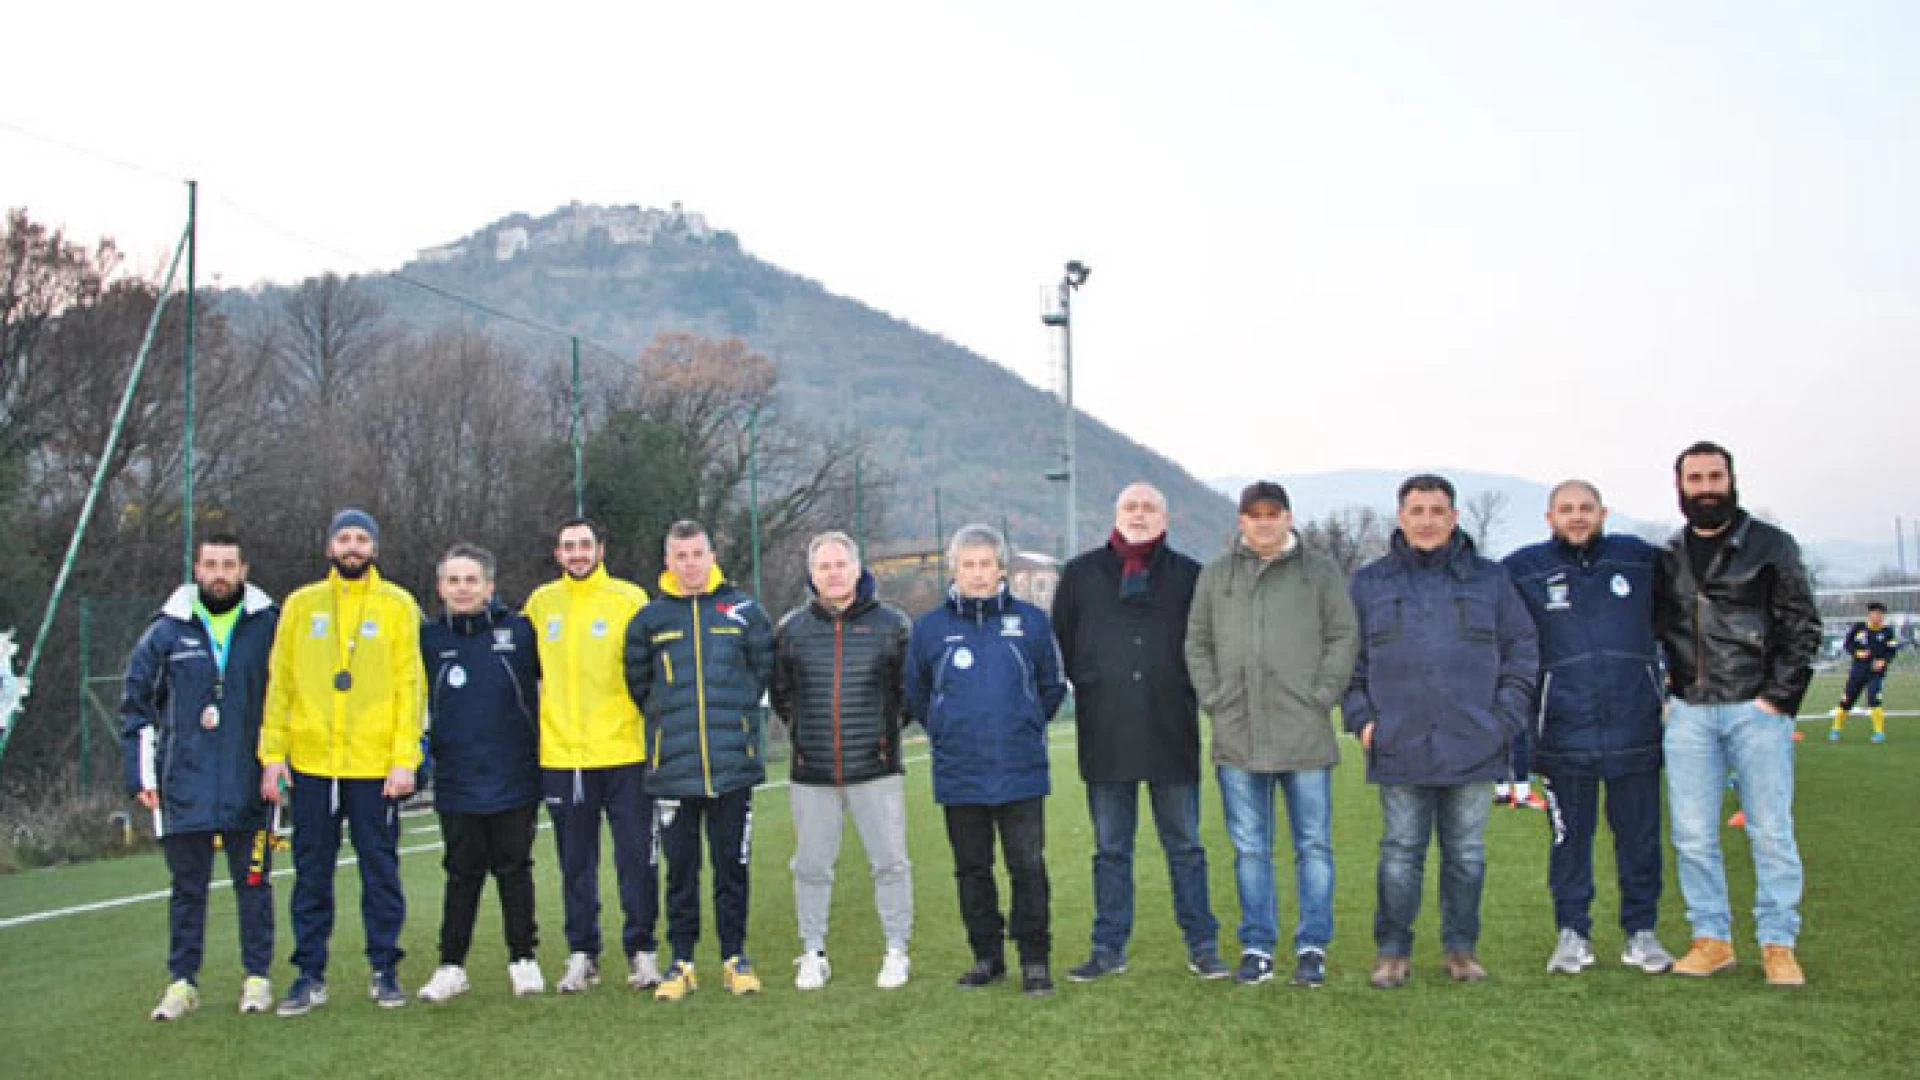 Roccaravindola: mercoledì 15 marzo la visita mensile del Frosinone Calcio al polo autorizzato dell’Asd Boys Roccaravindola.